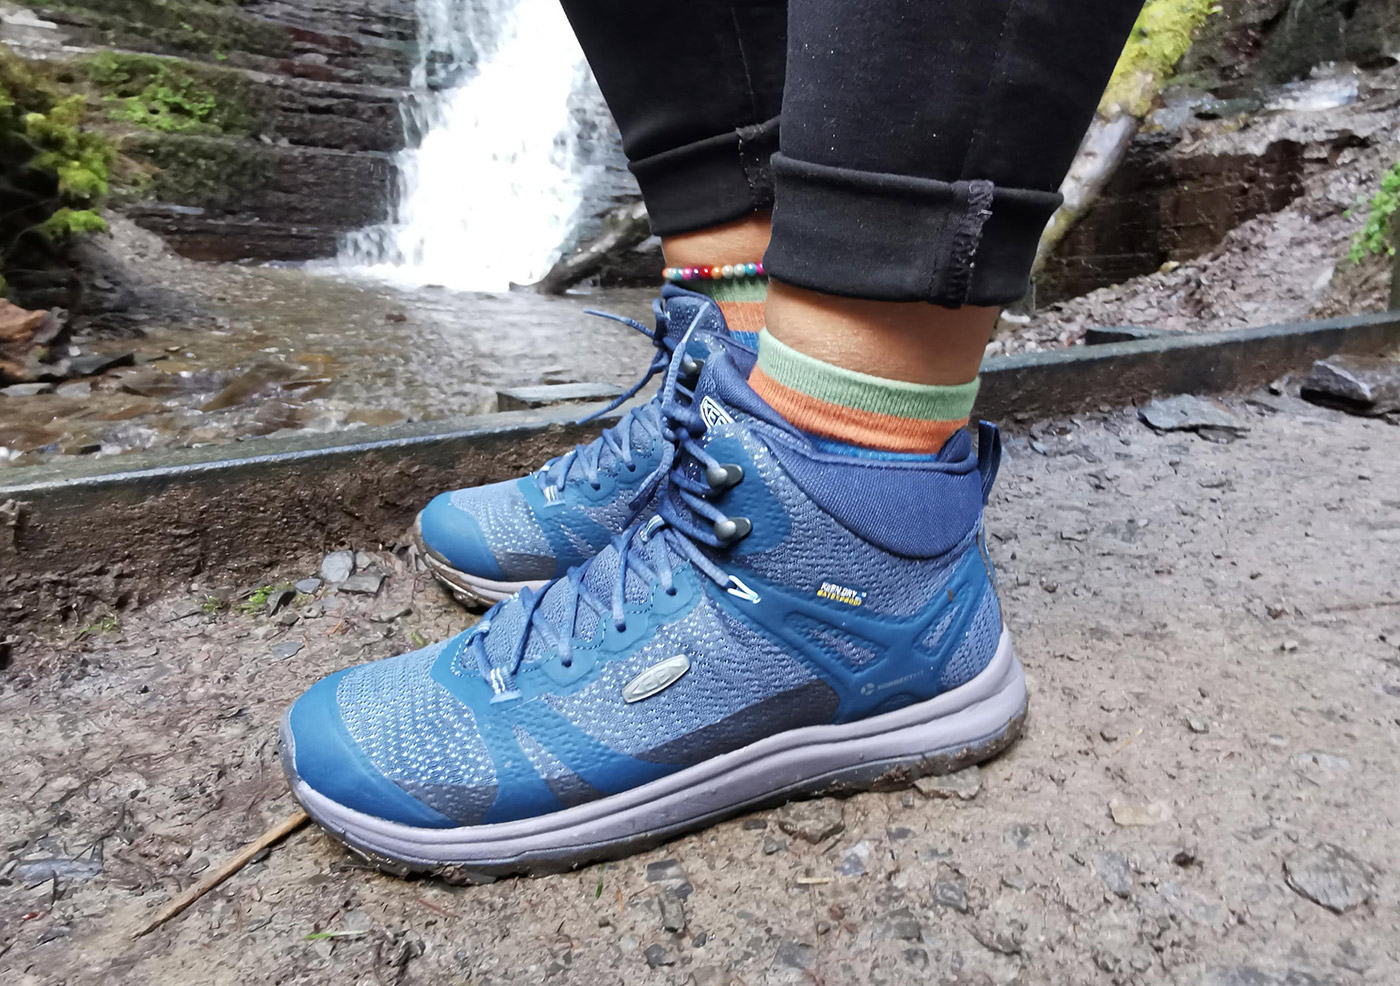 keen women's terradora waterproof hiking shoe